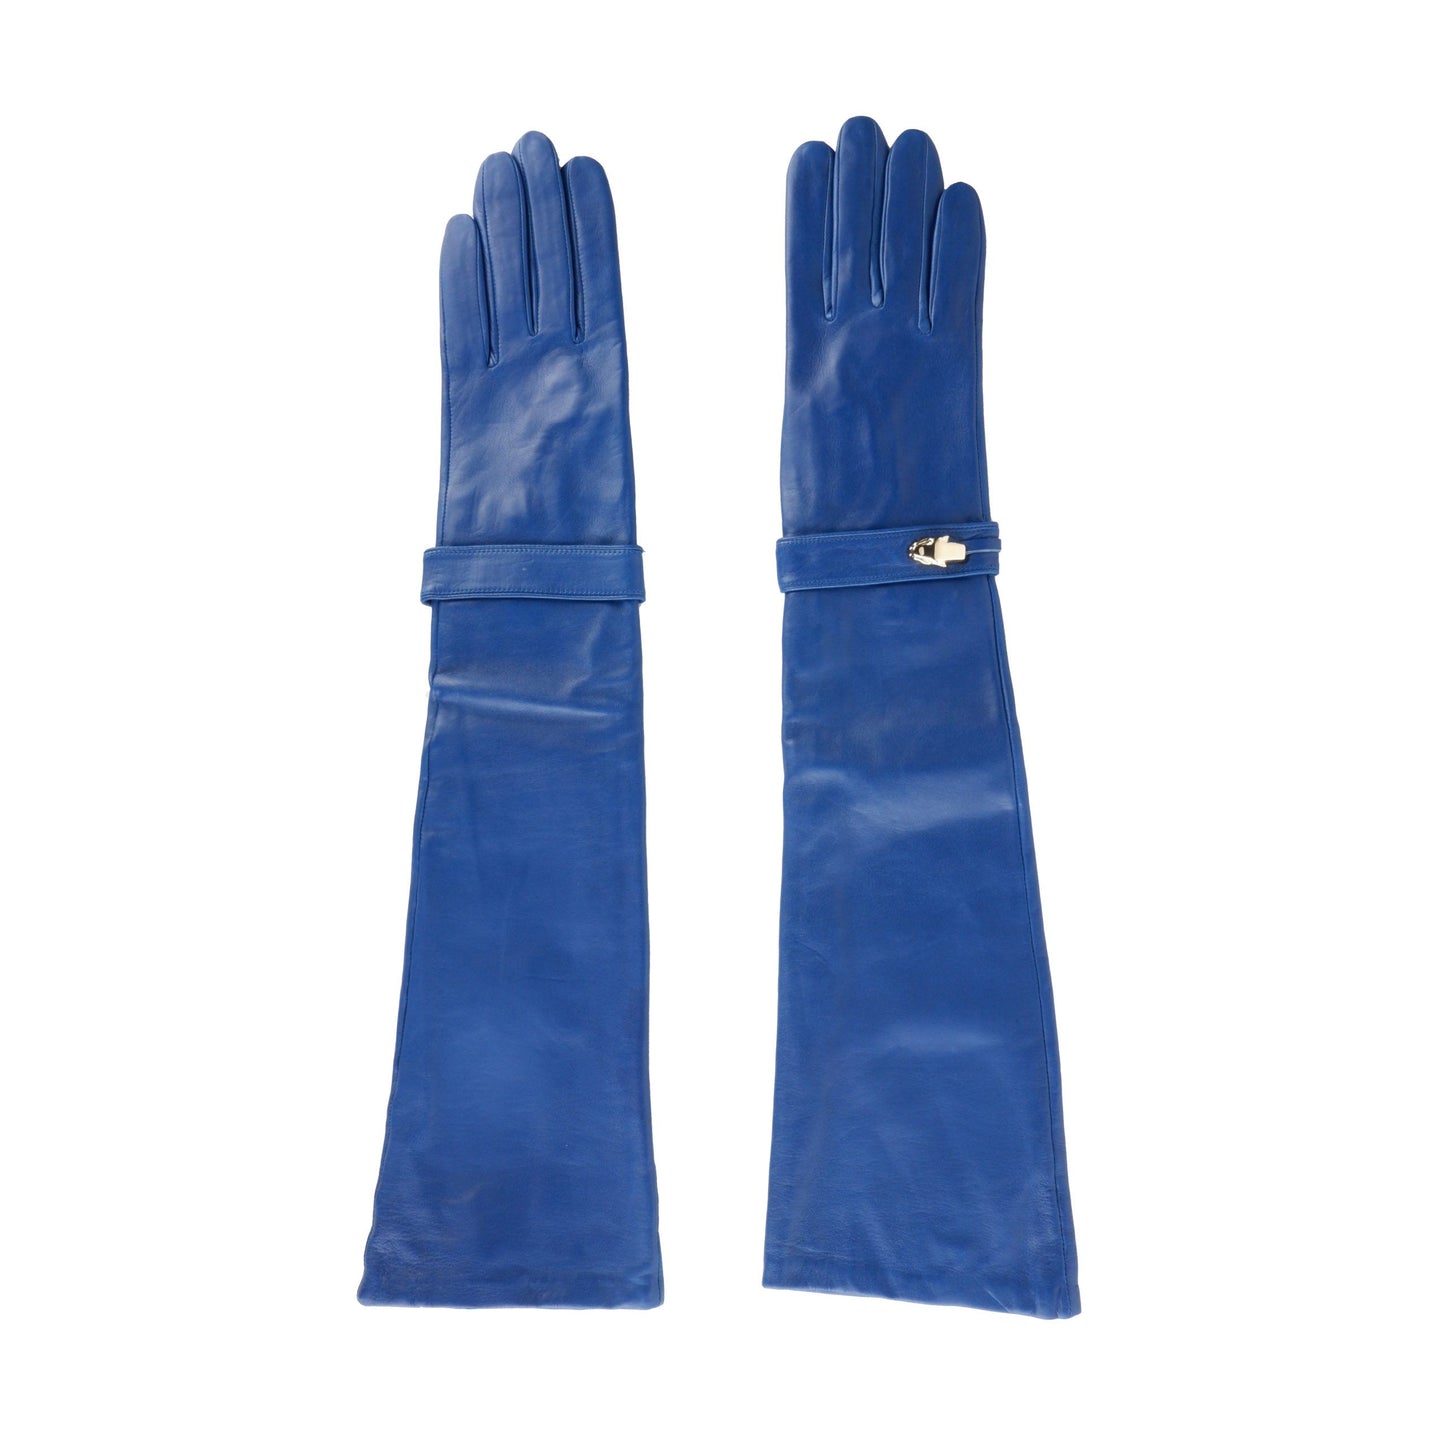 Cavalli Class Blue Leather Di Lambskin Glove